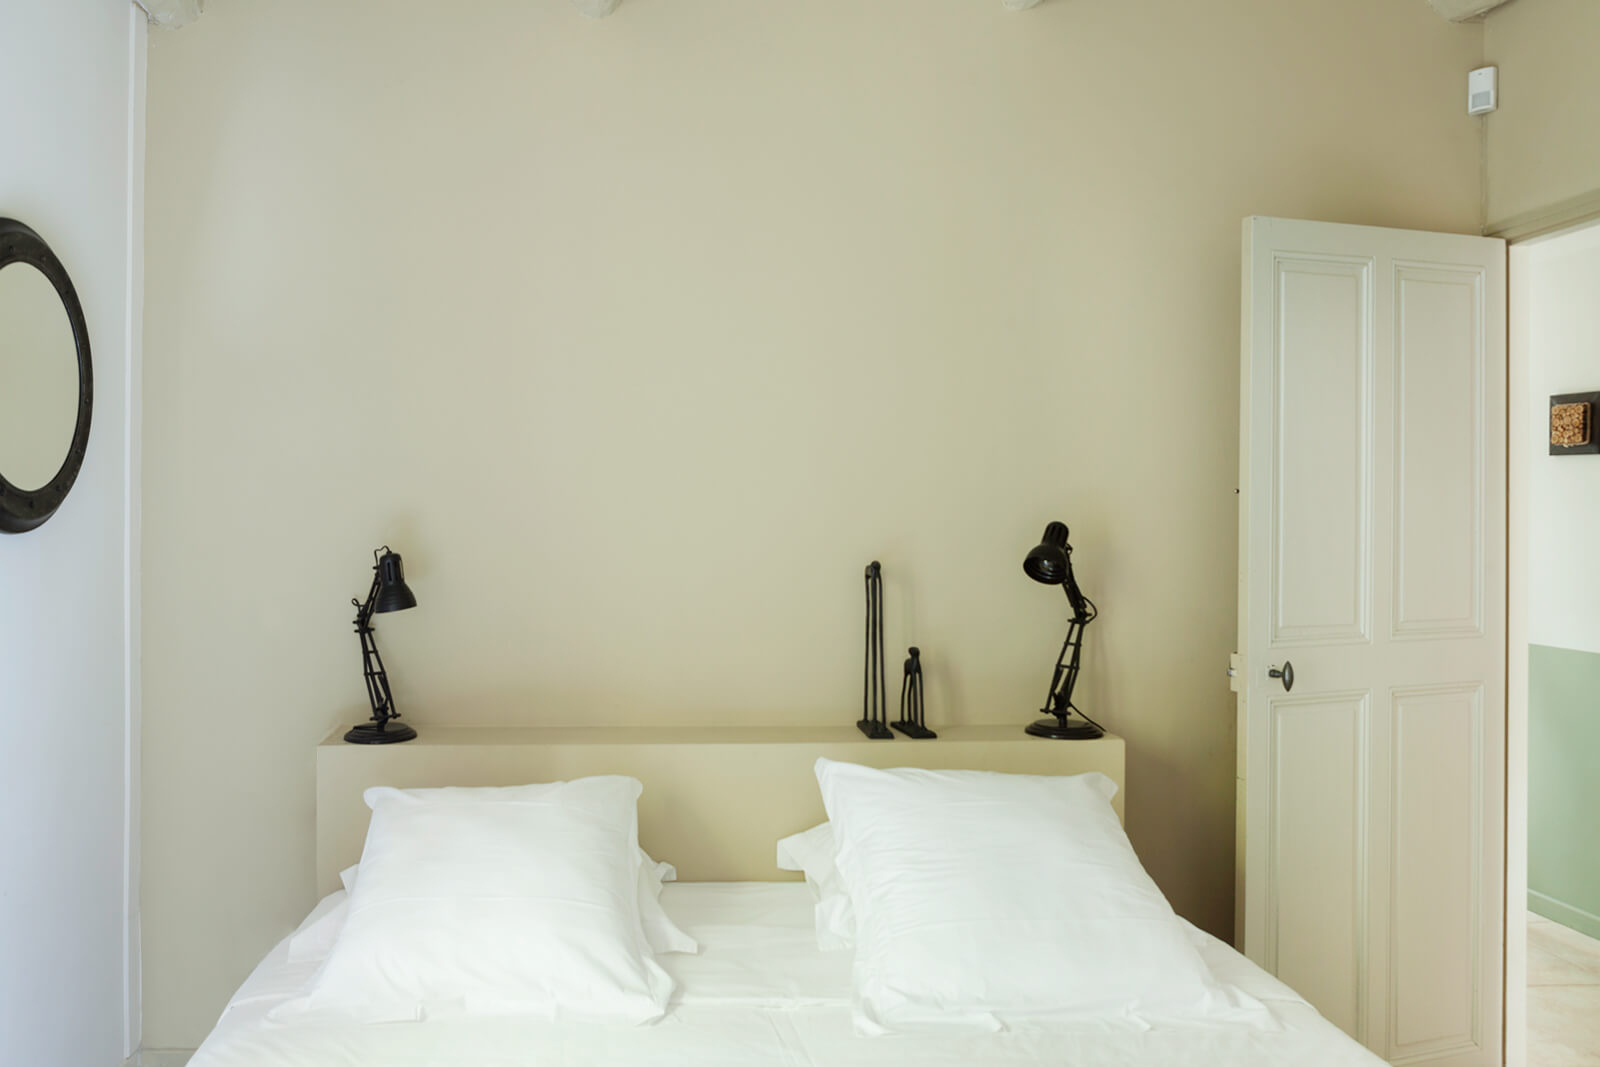 minimalist bedroom